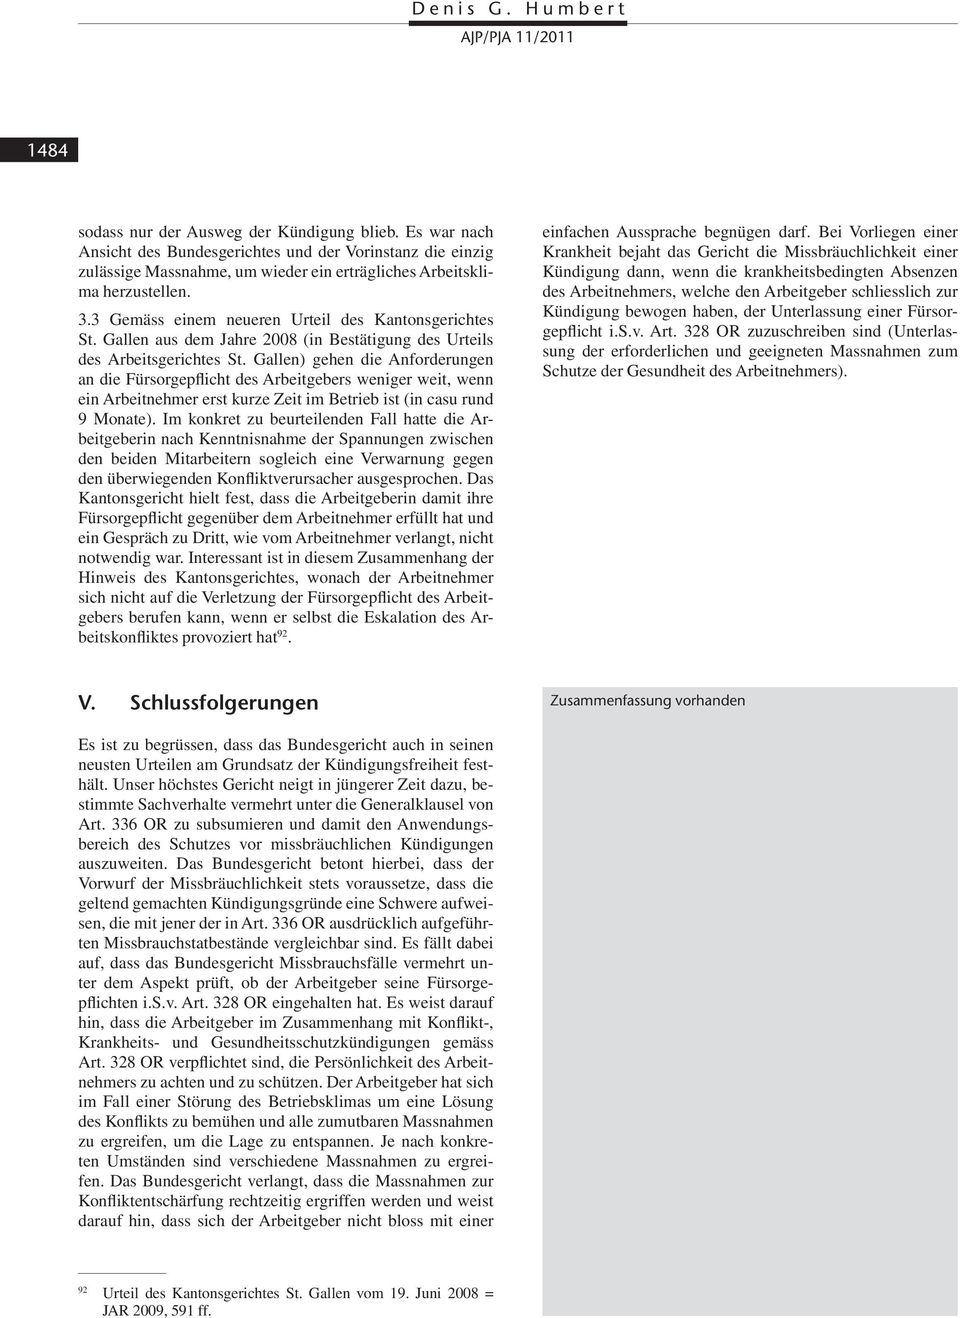 3 Gemäss einem neueren Urteil des Kantonsgerichtes St. Gallen aus dem Jahre 2008 (in Bestätigung des Urteils des Arbeitsgerichtes St.